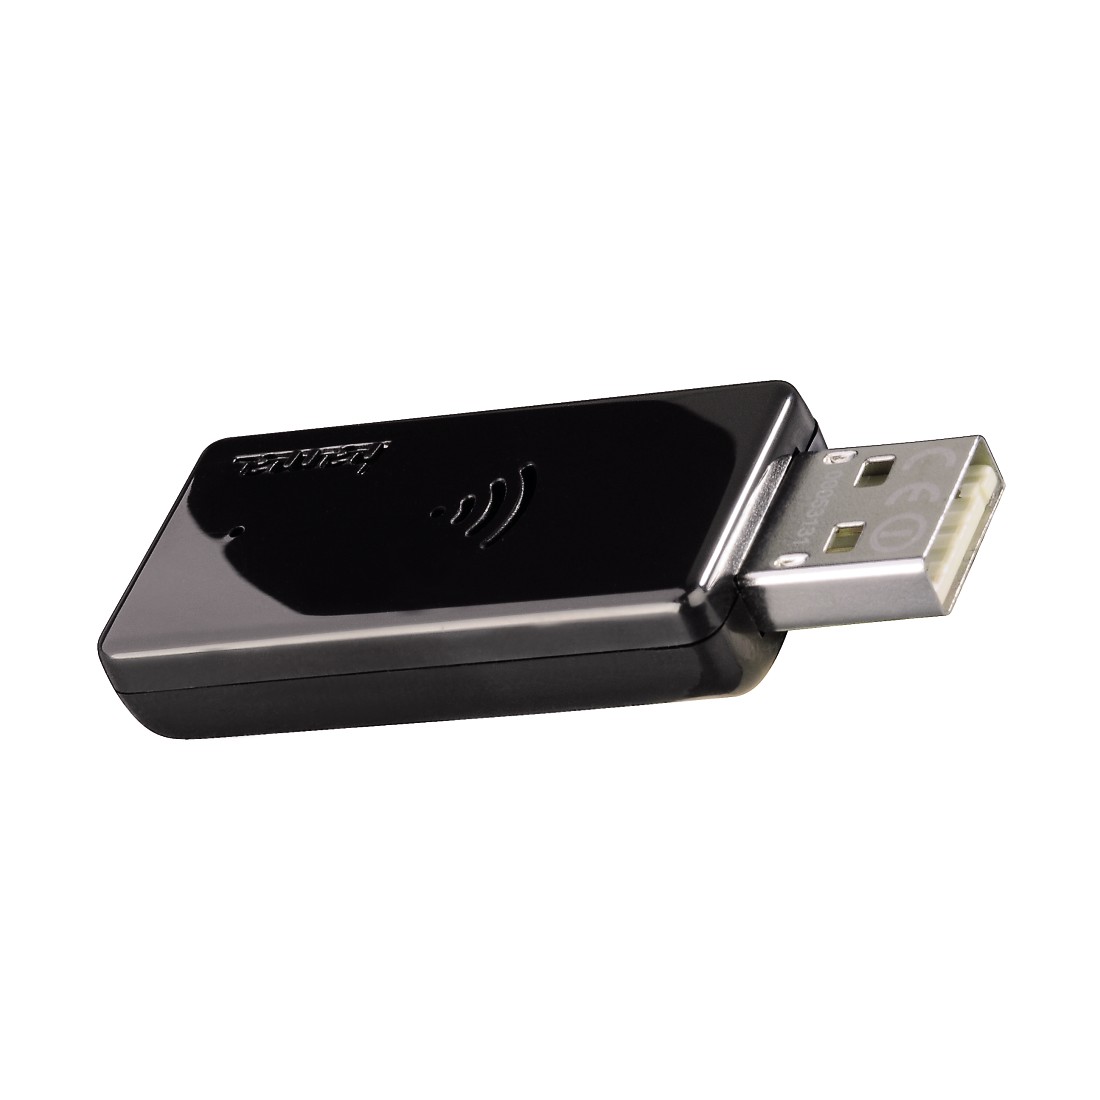 Hama N300 WLAN USB Stick, 2.4 GHz